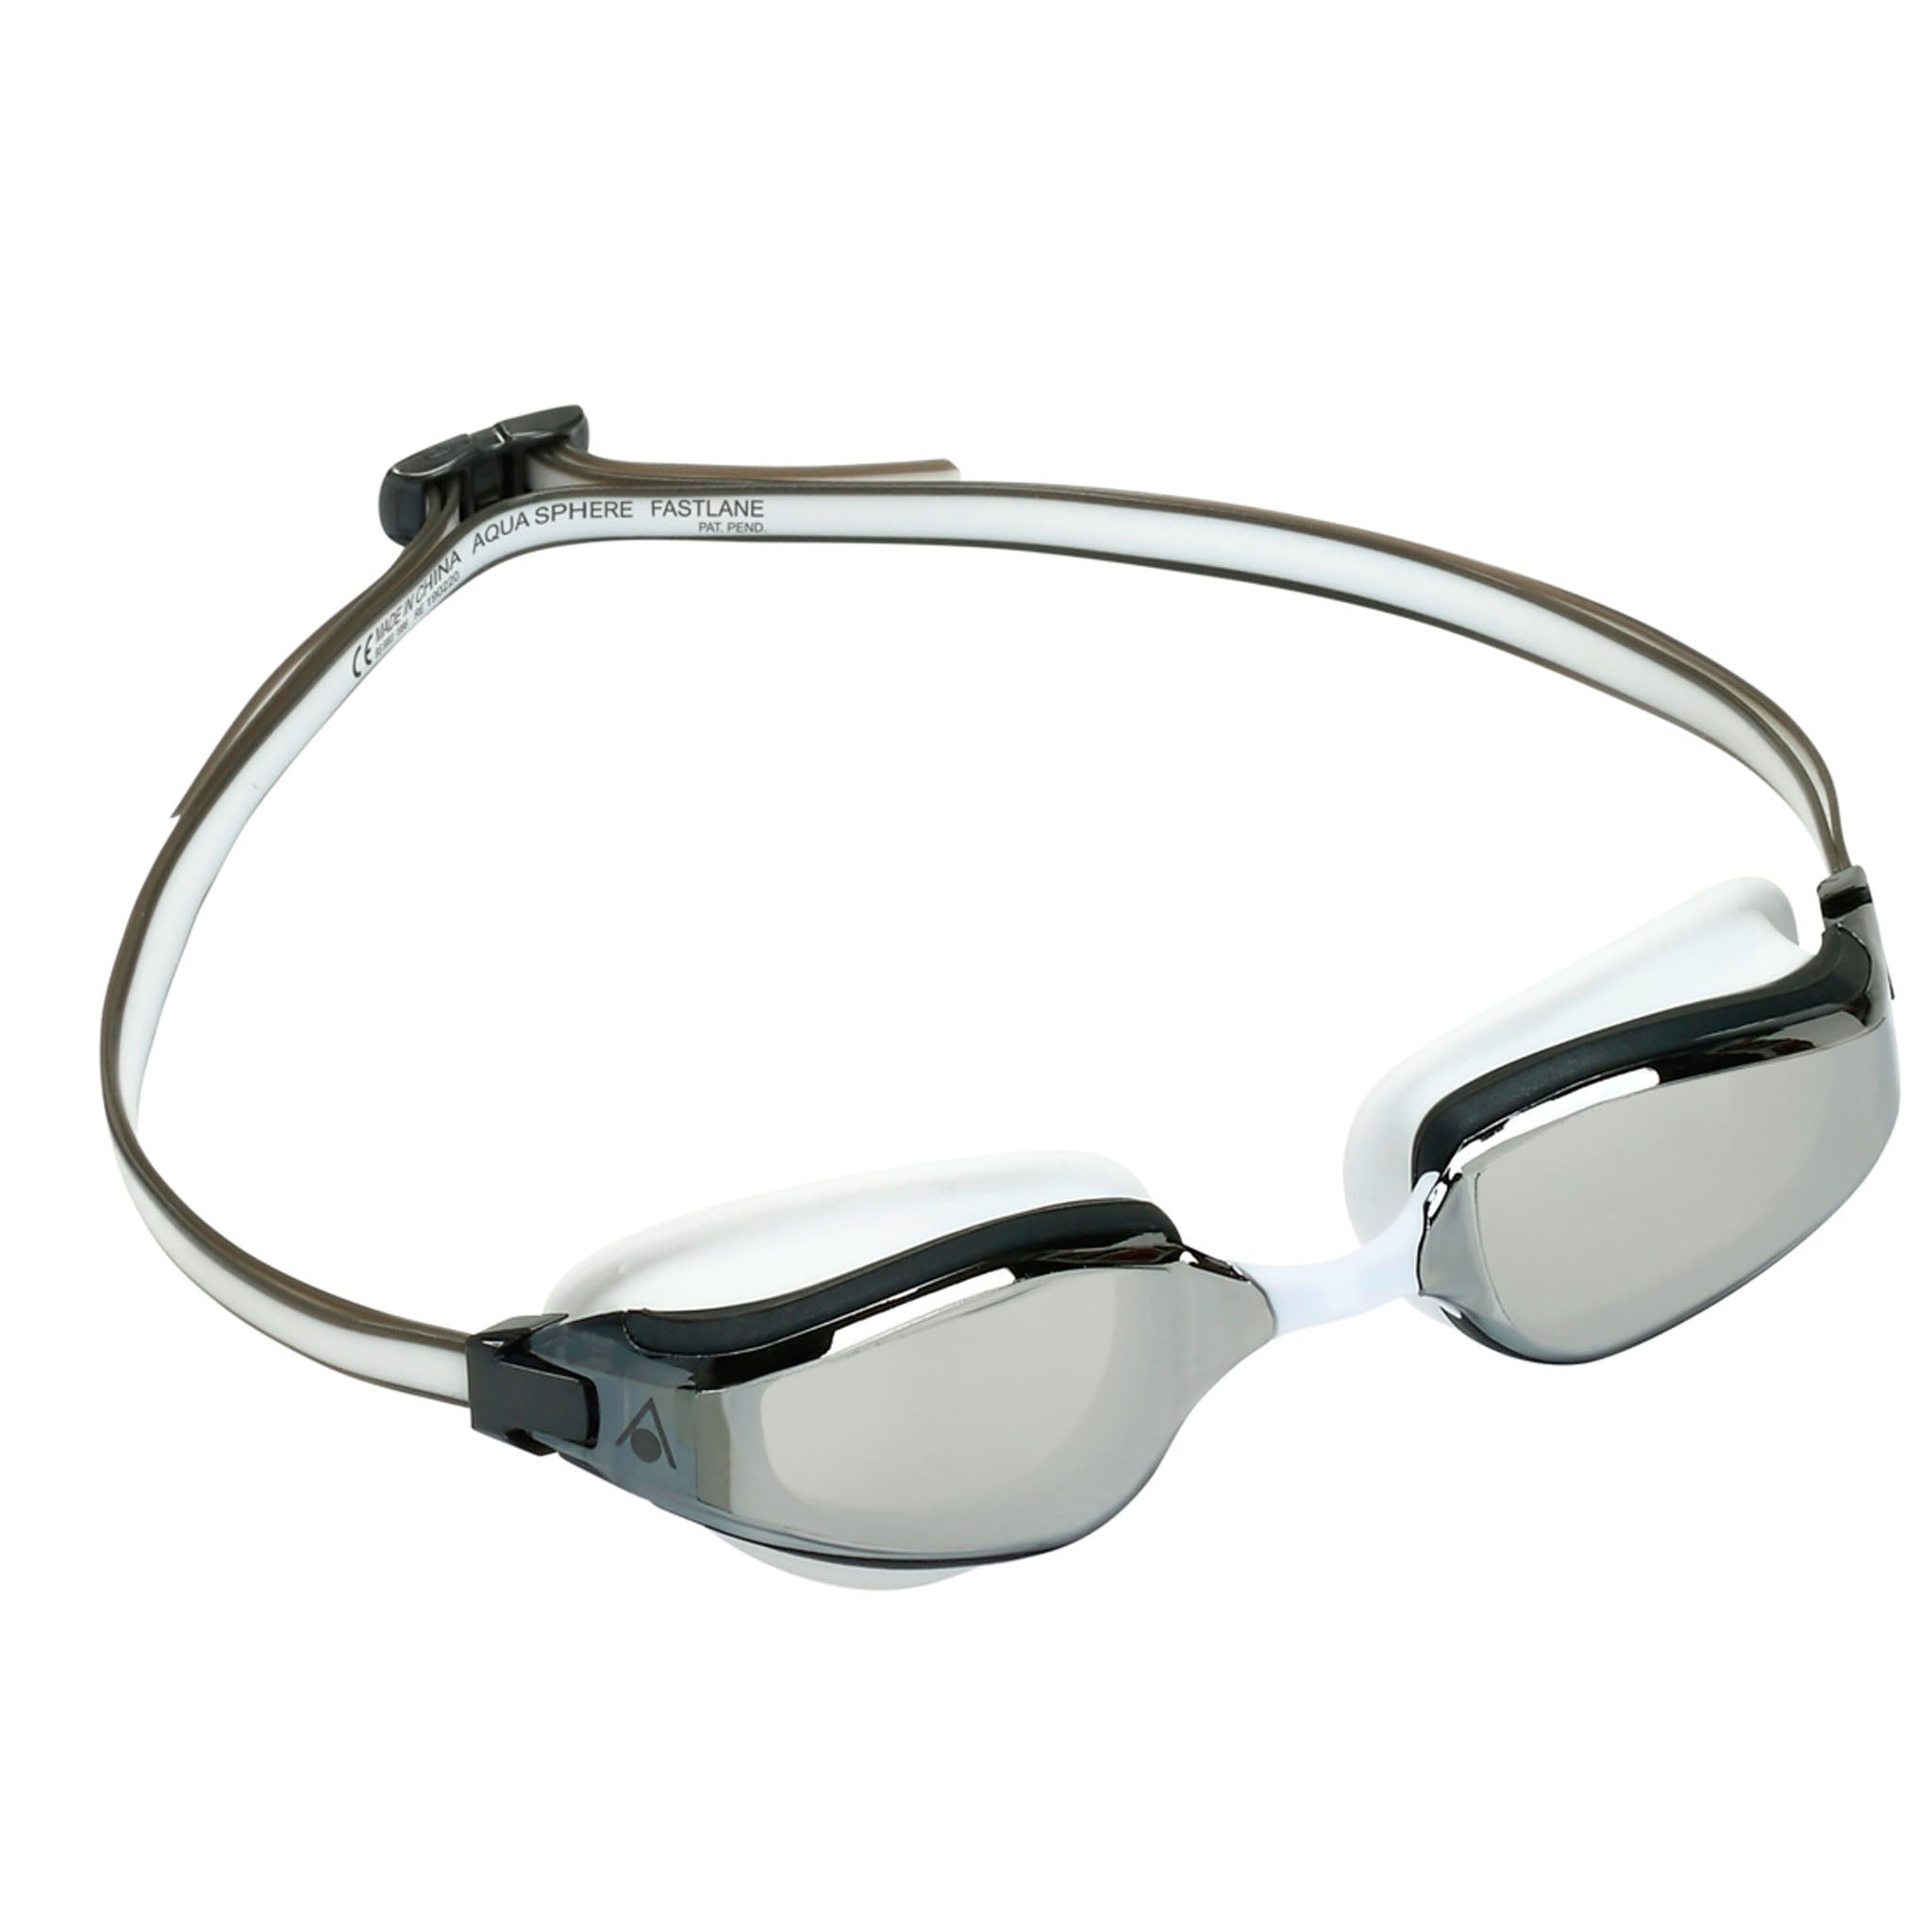 Aqua Sphere Fastlane Swimming Goggles Silver Mirrored Lenses - White/Grey Side